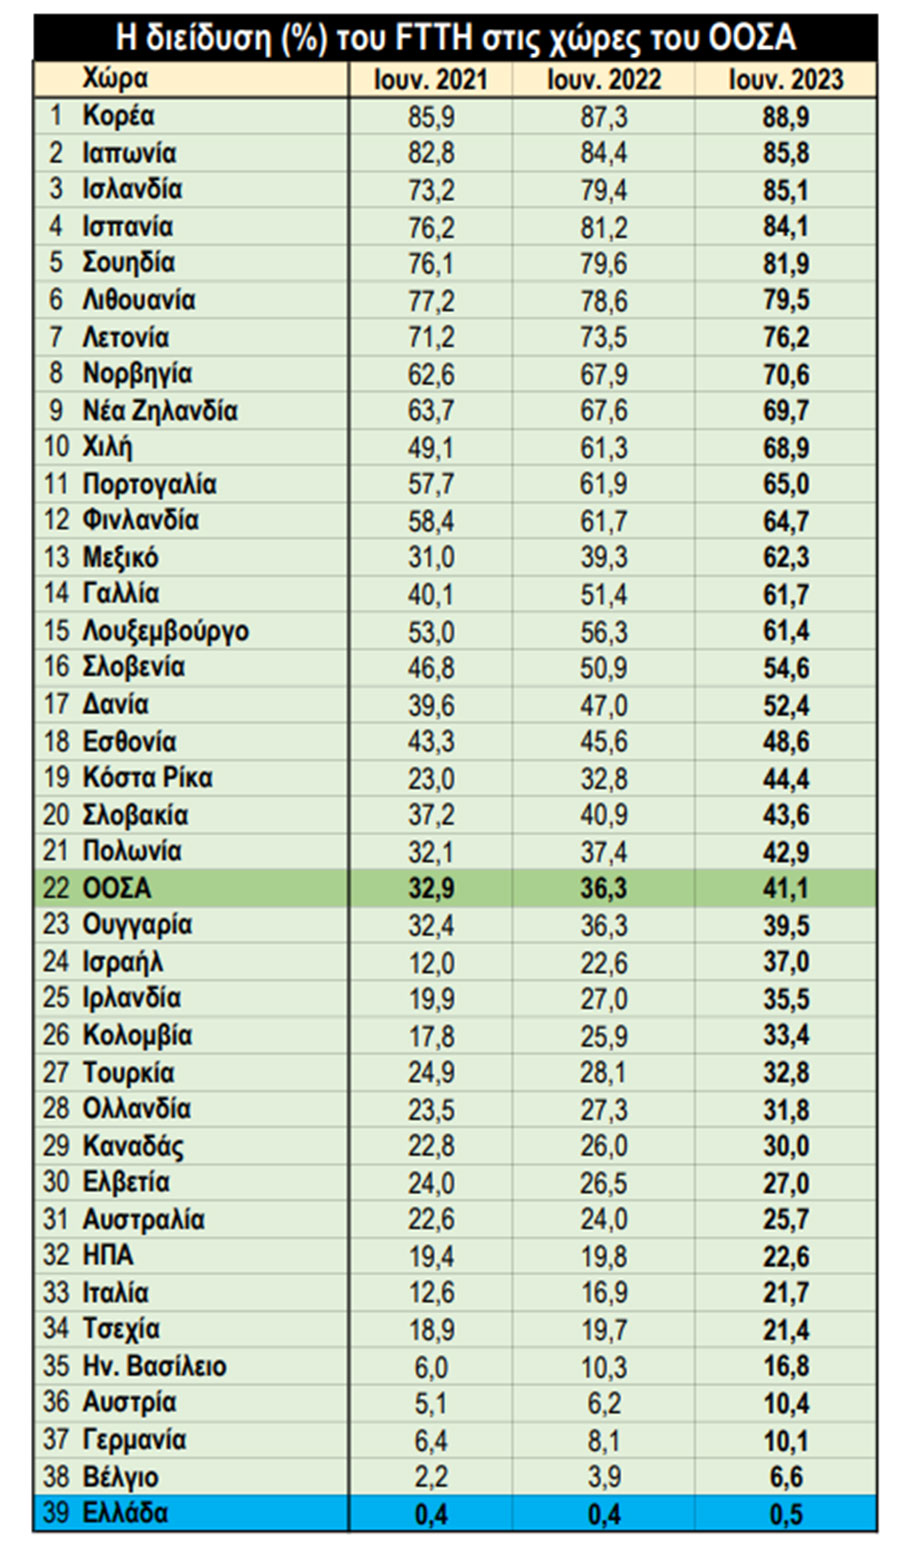 Στην τελευταία θέση της λίστας η Ελλάδα στις χώρες με ποσοστά FTTH © ΟΟΣΑ